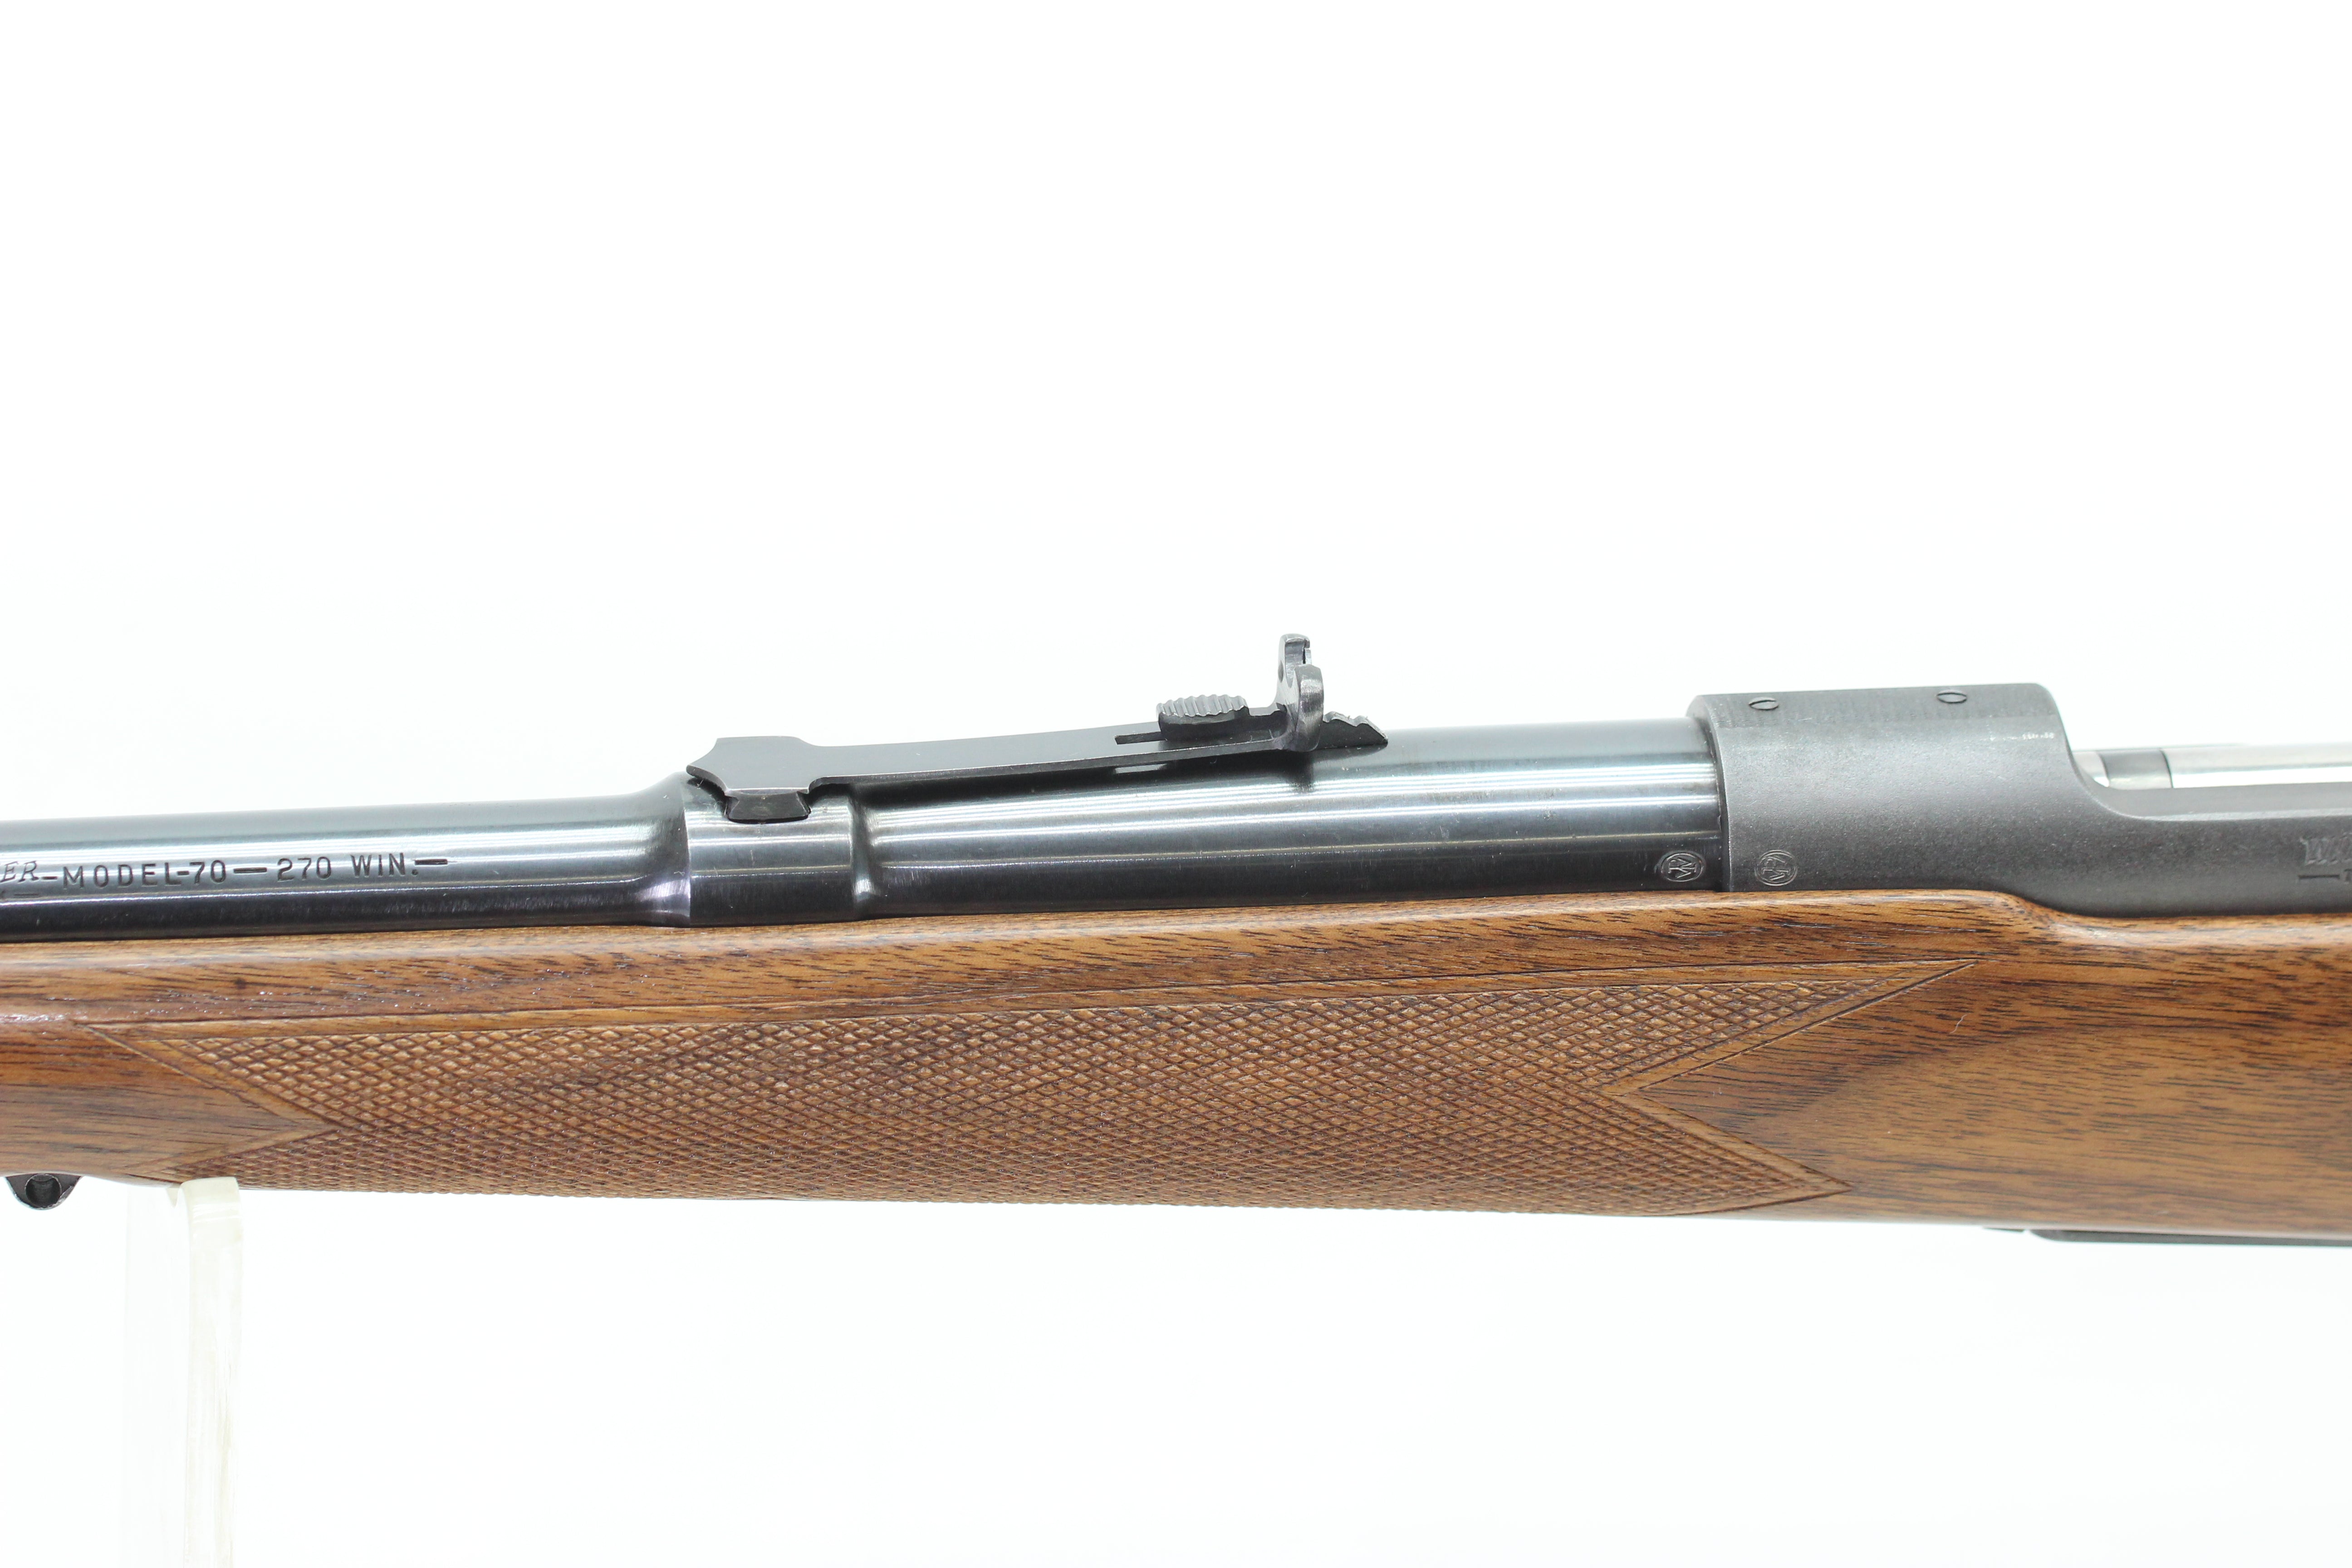 .270 Super Grade Rifle - 1951